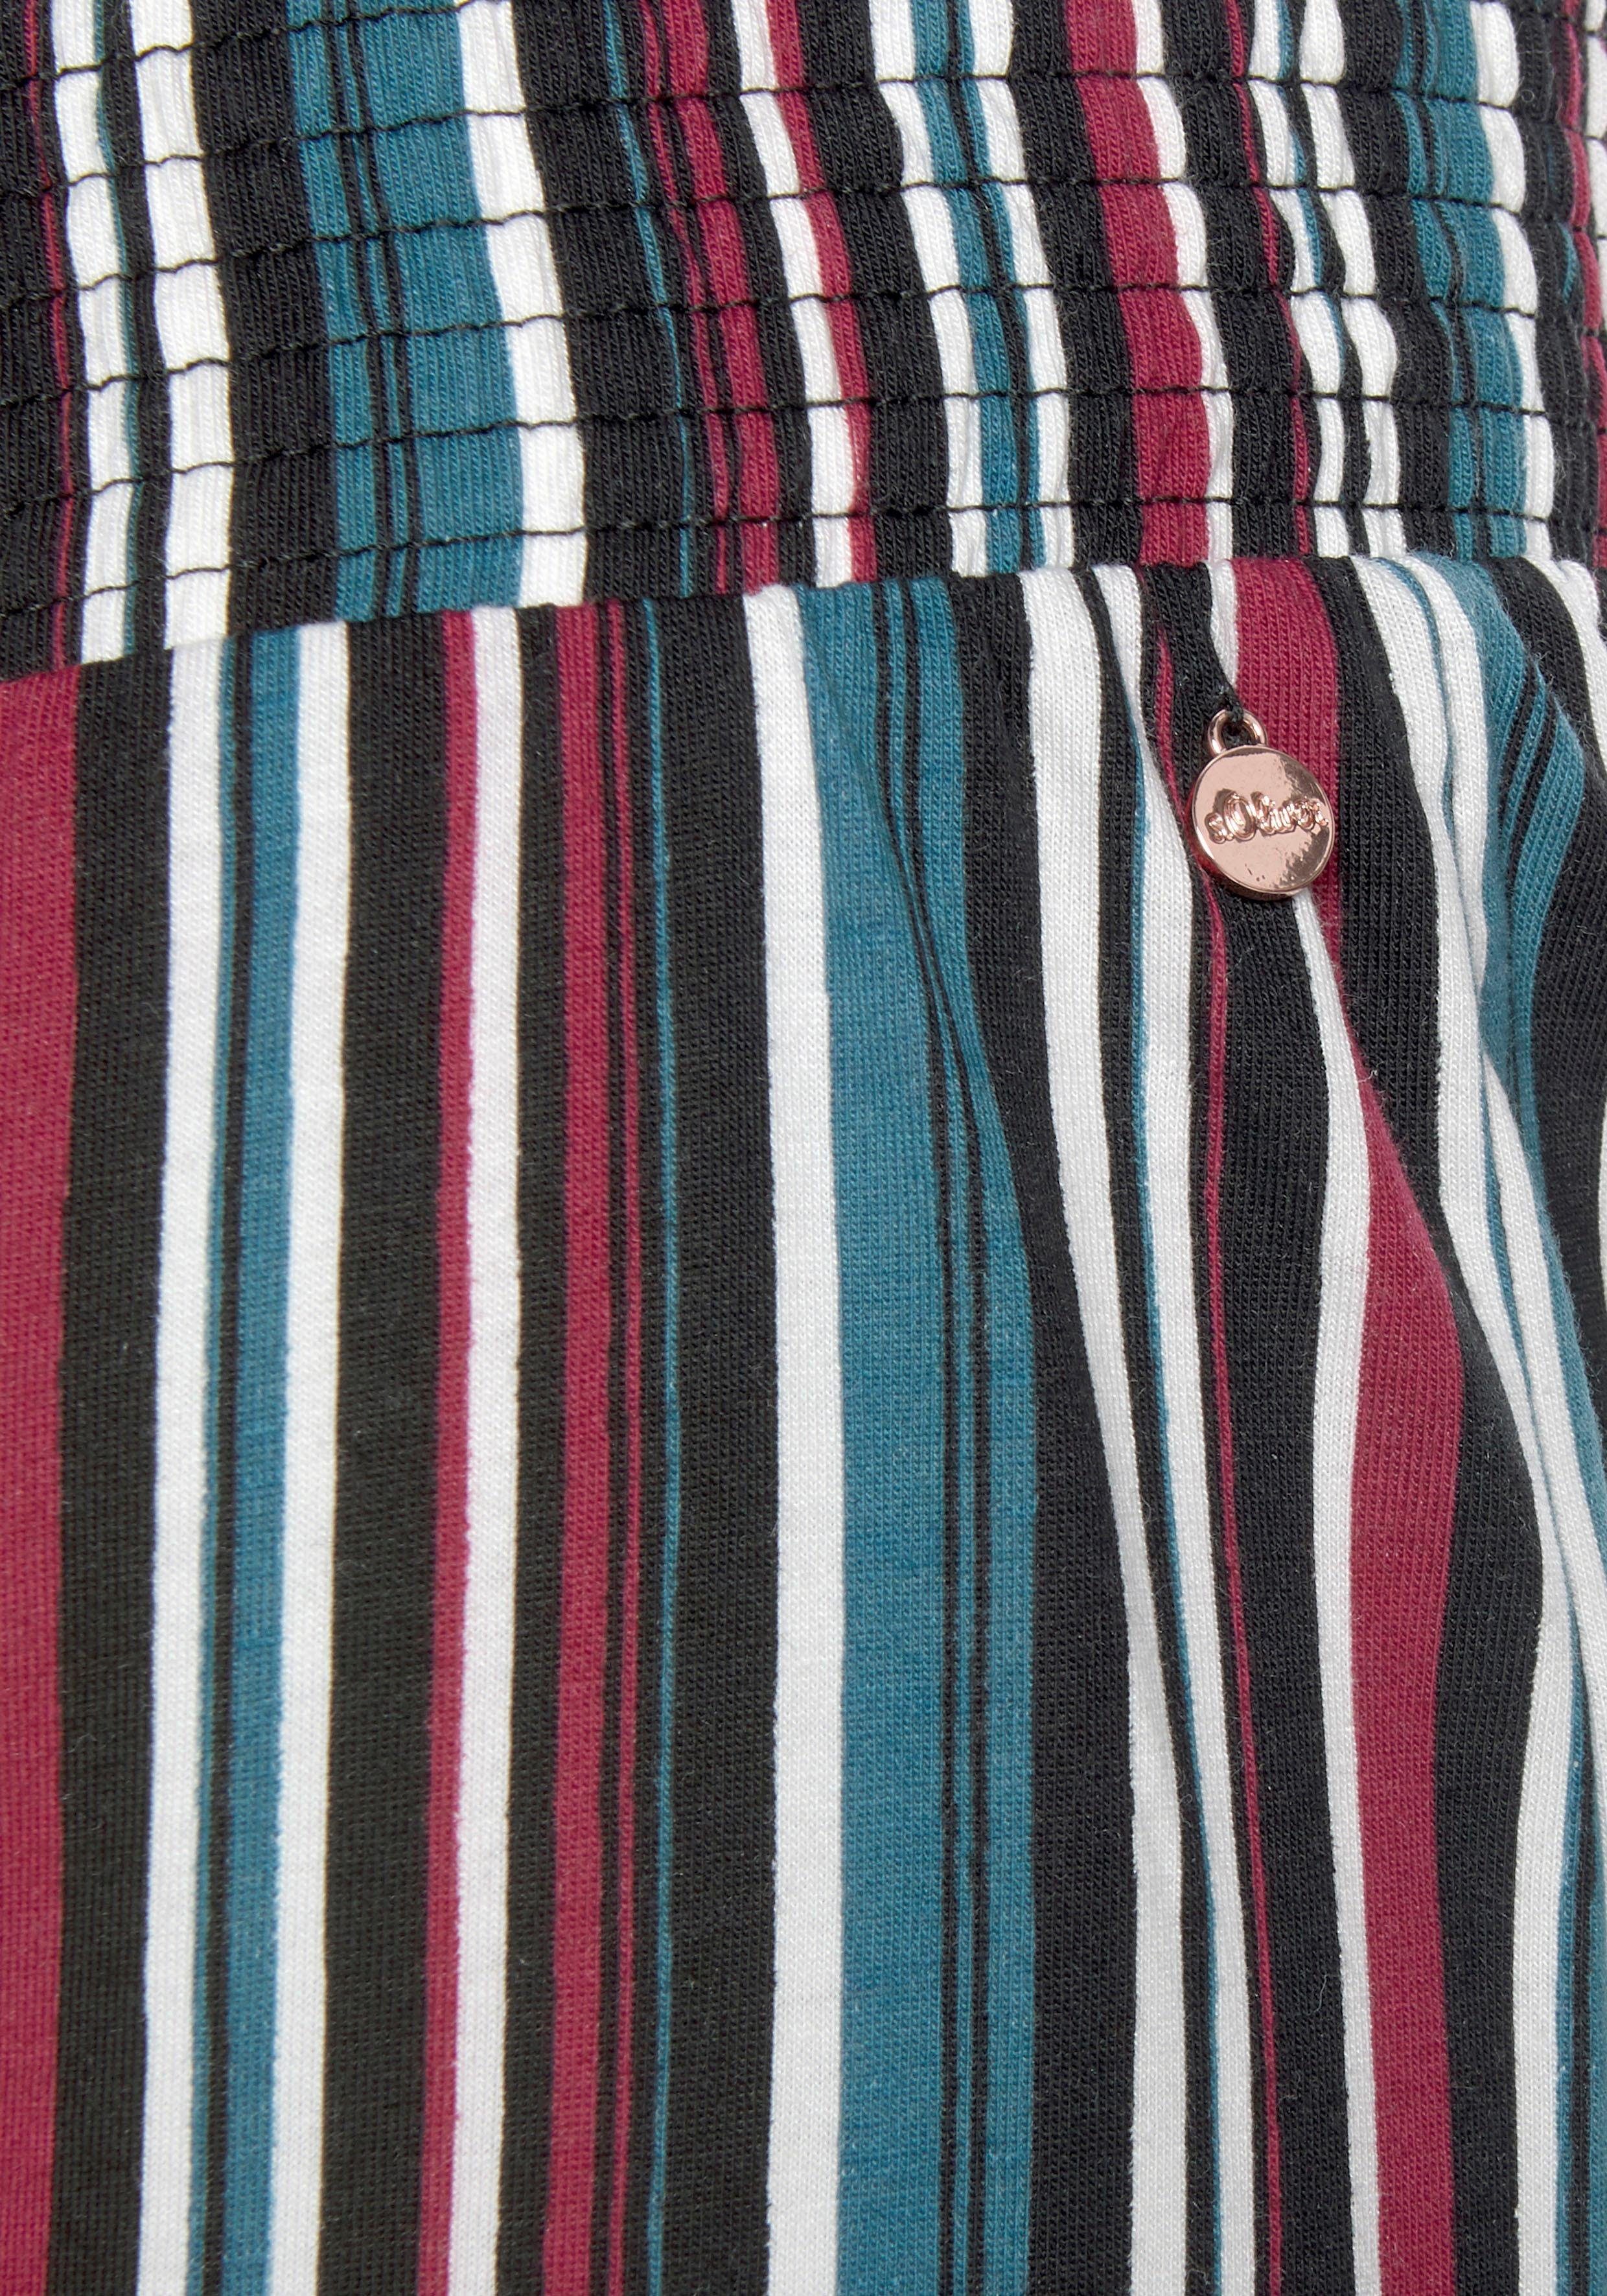 elastischem Pyjamahose im s.Oliver Allover-Muster Bund mit petrol-weinrot-gestreift